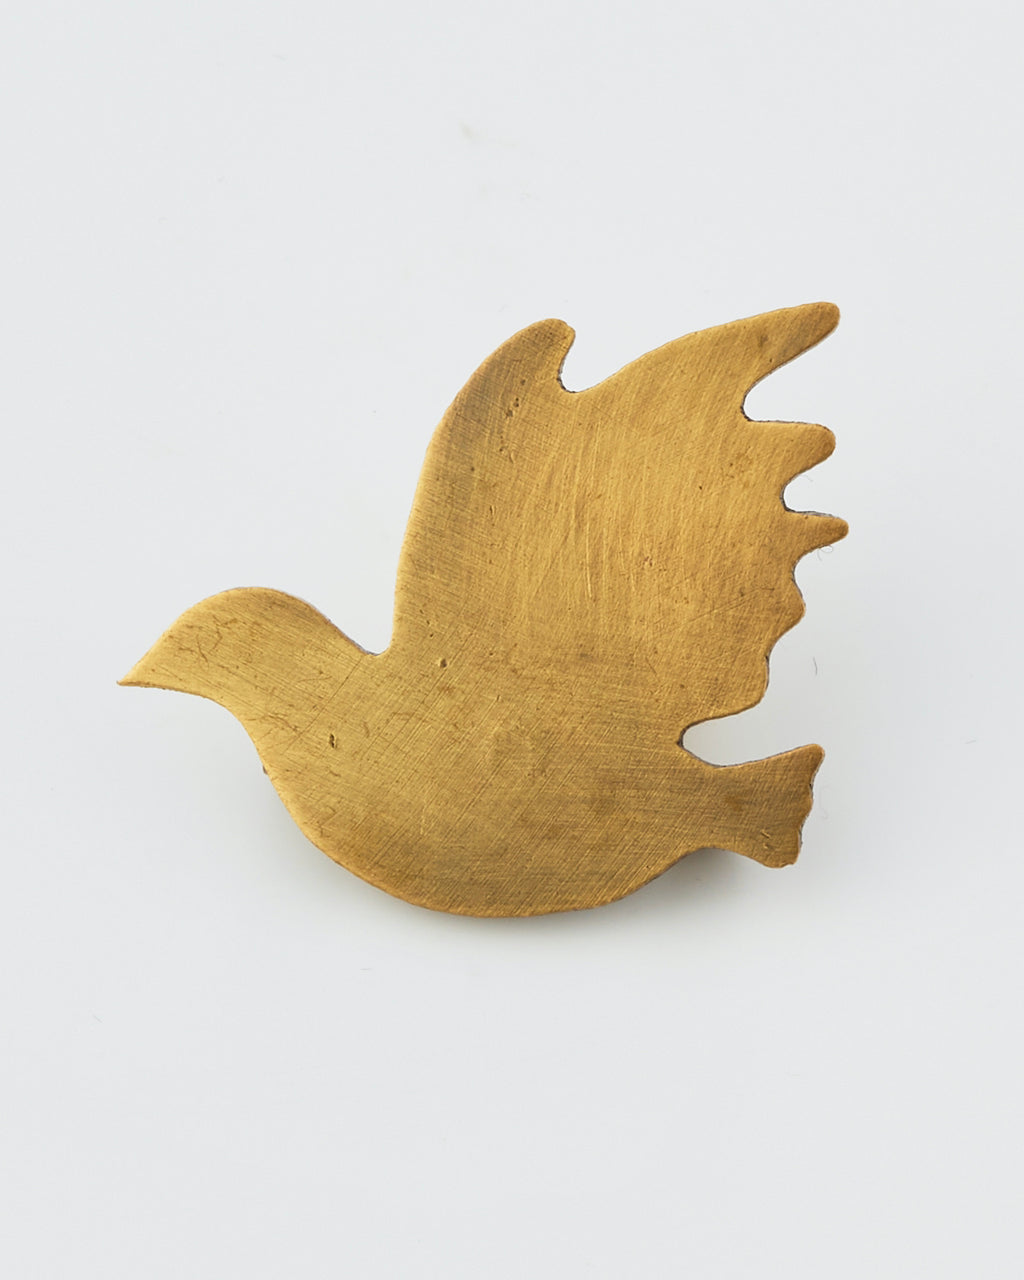 Brass Bird Pin: Thrush